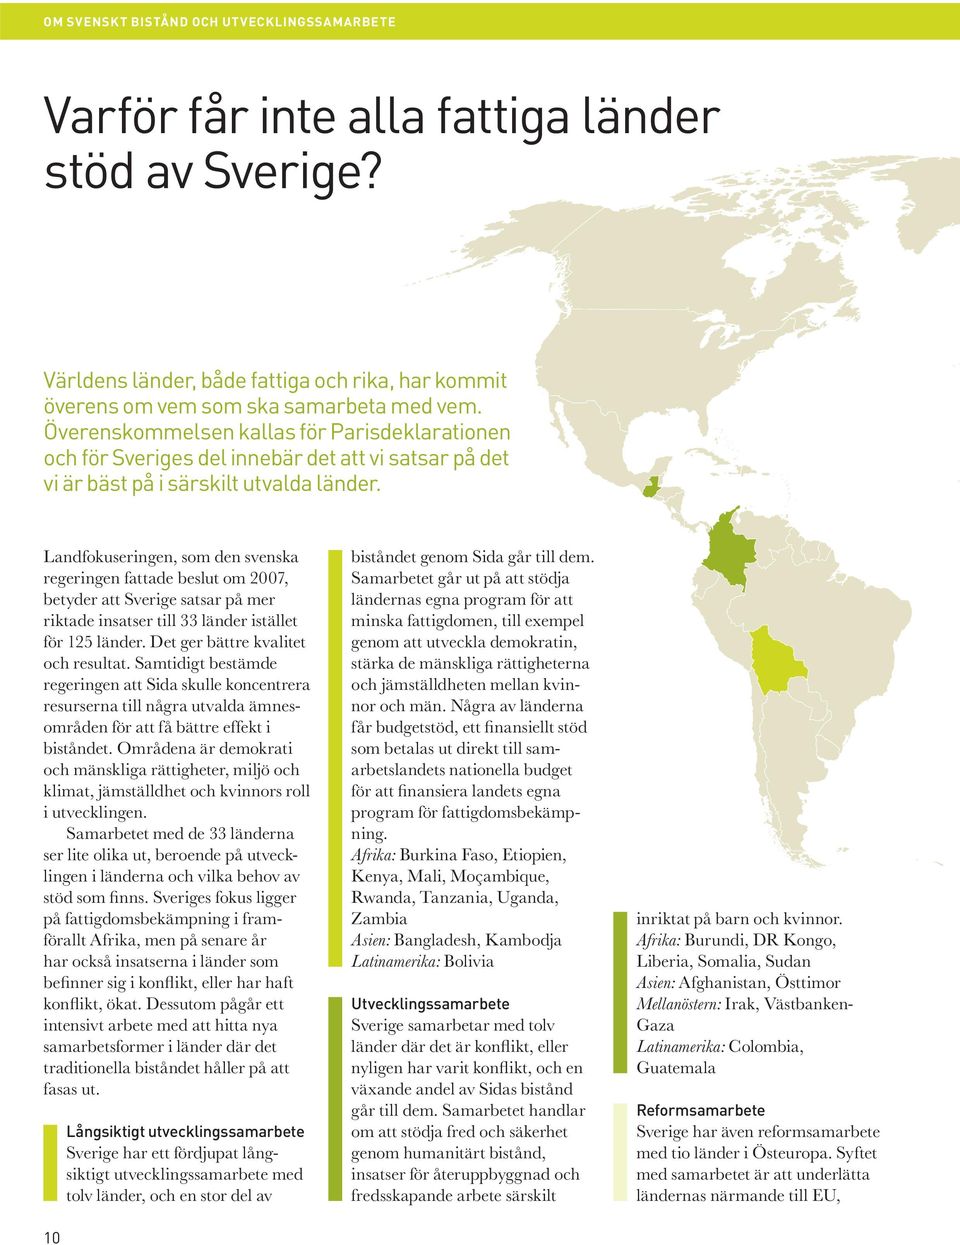 Landfokuseringen, som den svenska regeringen fattade beslut om 2007, betyder att Sverige satsar på mer riktade insatser till 33 länder istället för 125 länder. Det ger bättre kvalitet och resultat.